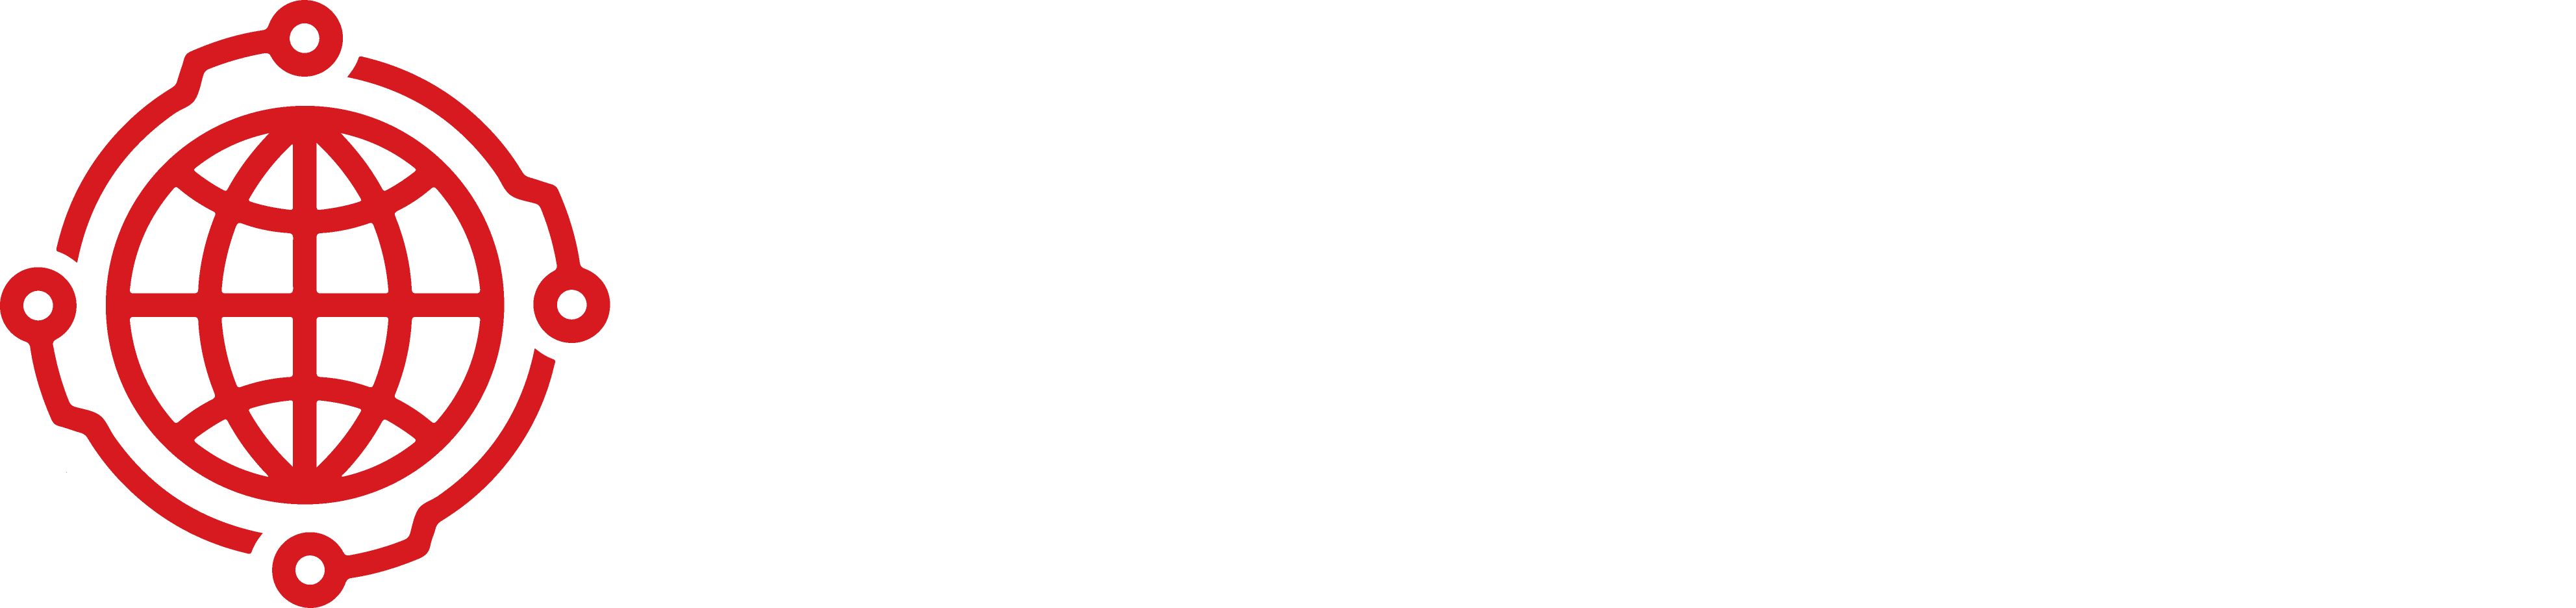 MGS Network (MGSN™)